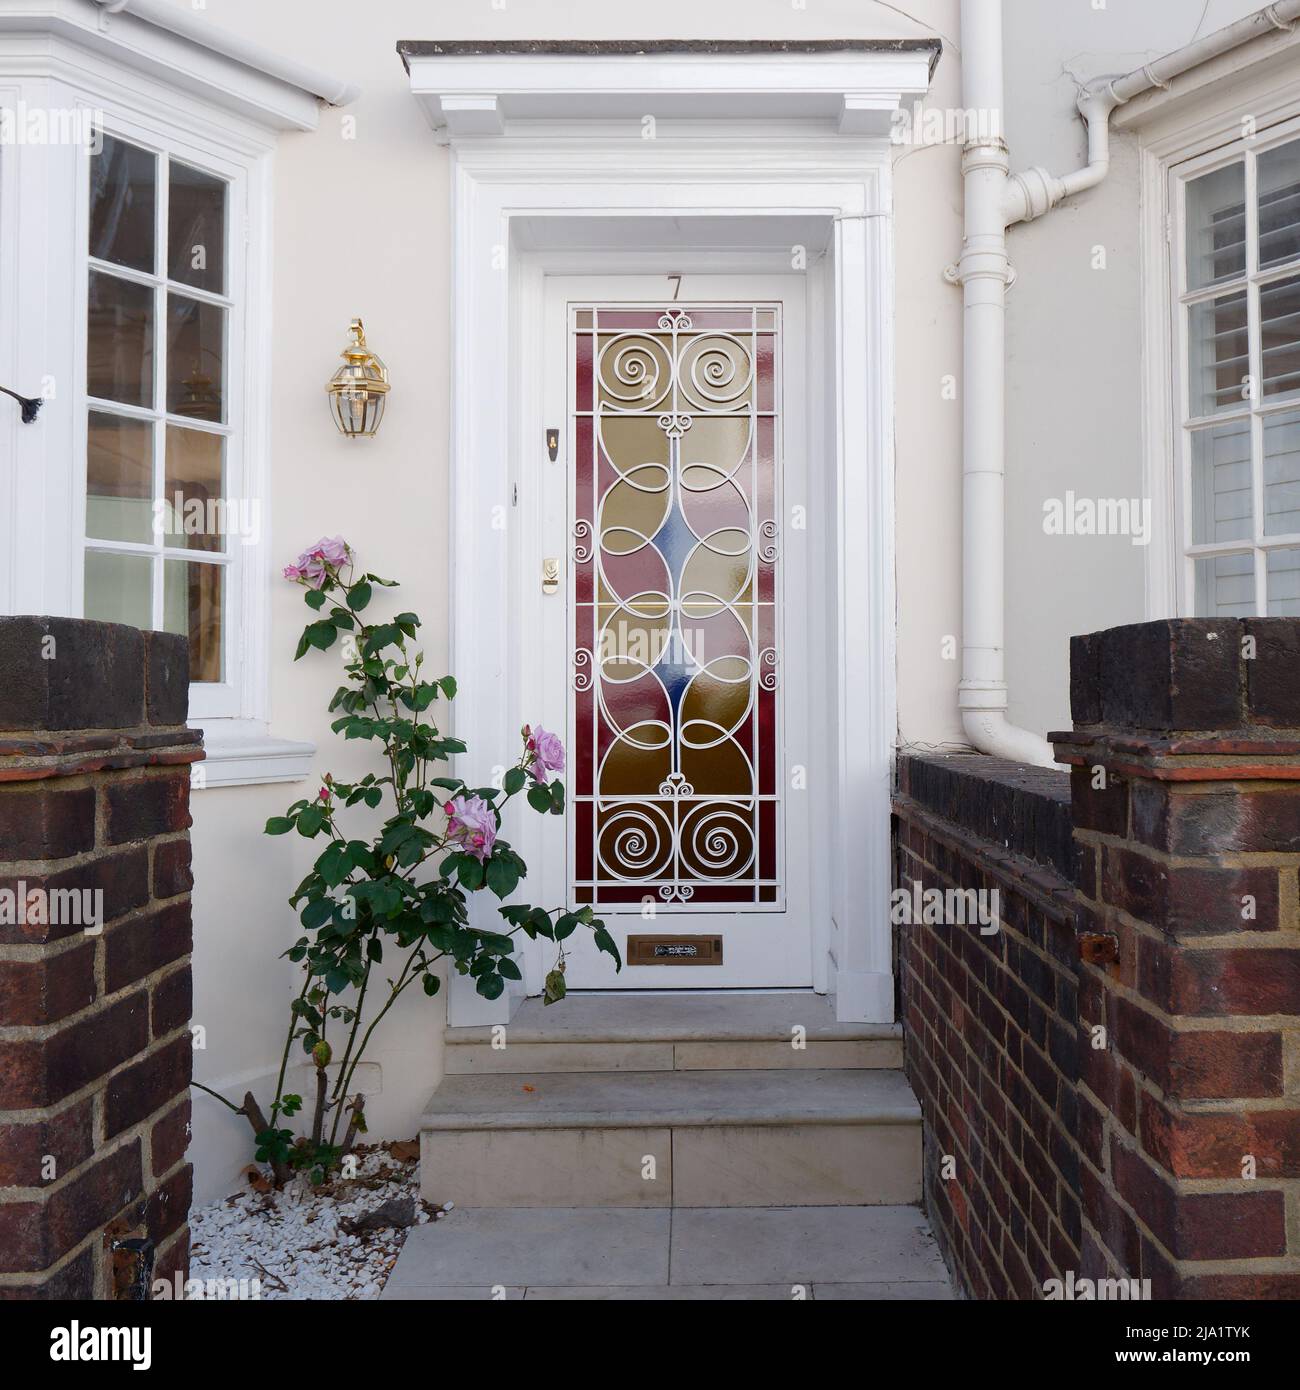 Entrée de la maison avec une porte d'entrée aux vitraux roses, bleus et jaunes et des fleurs roses à l'extérieur, juste à côté de Kings Road à Chelsea, Londres. Banque D'Images